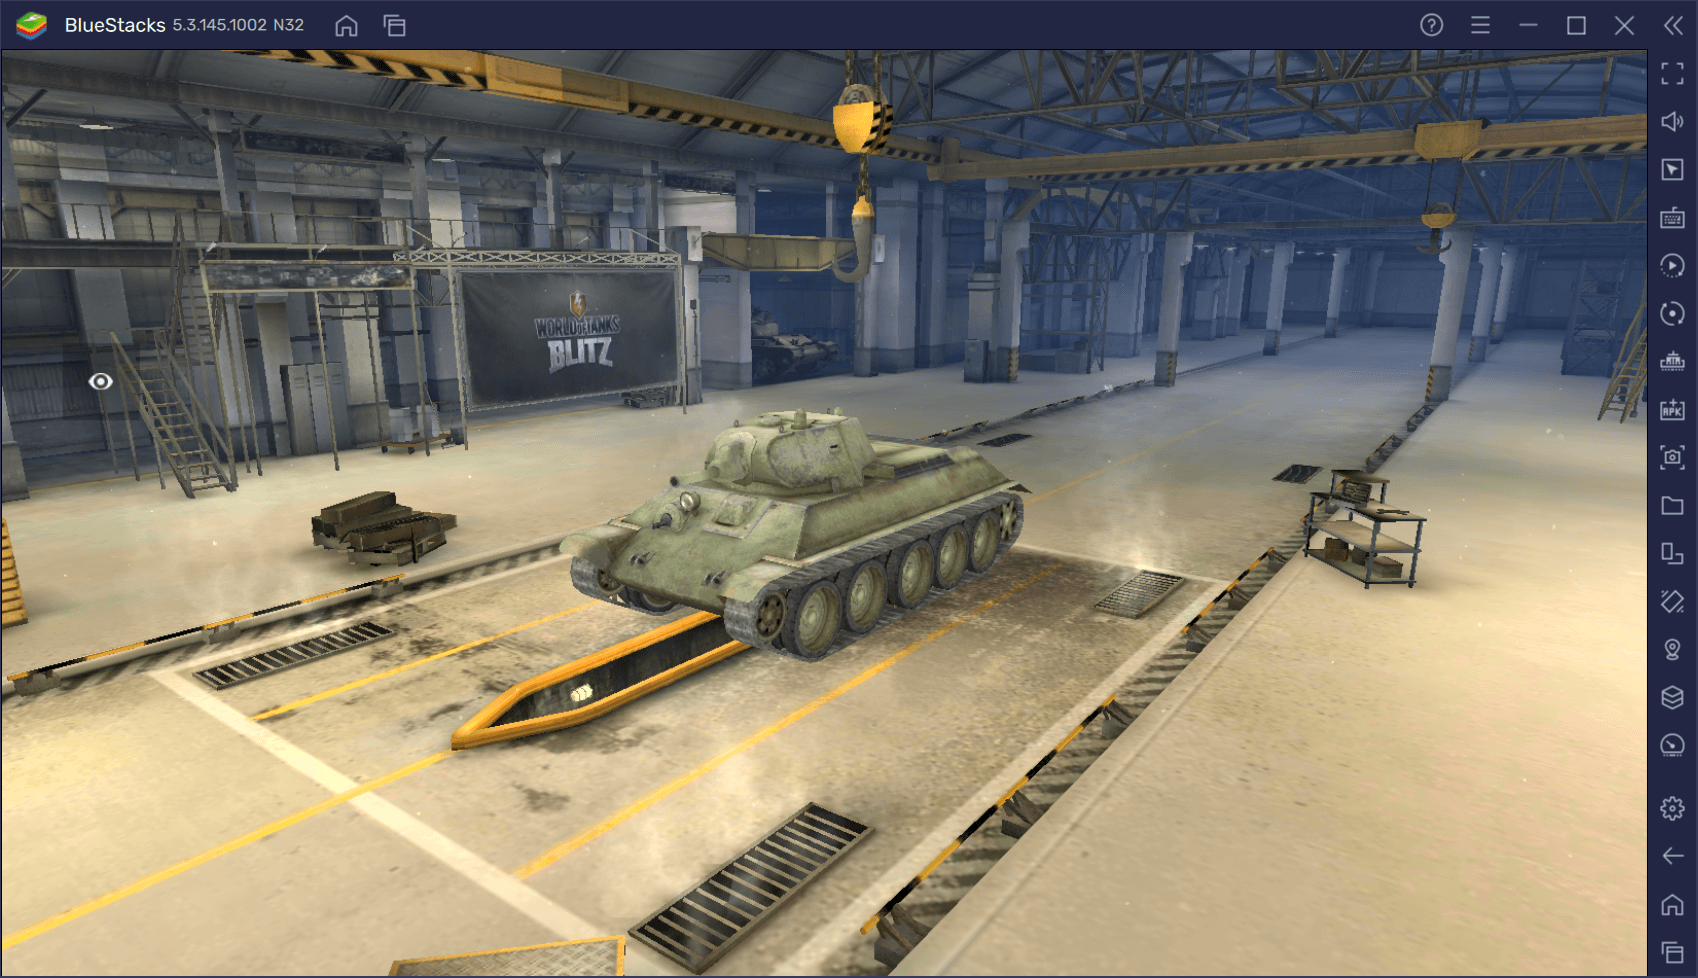 Акционный средний танк А-32 в World of Tanks Blitz. Обзор характеристик, параметров, преимуществ и тактик игры